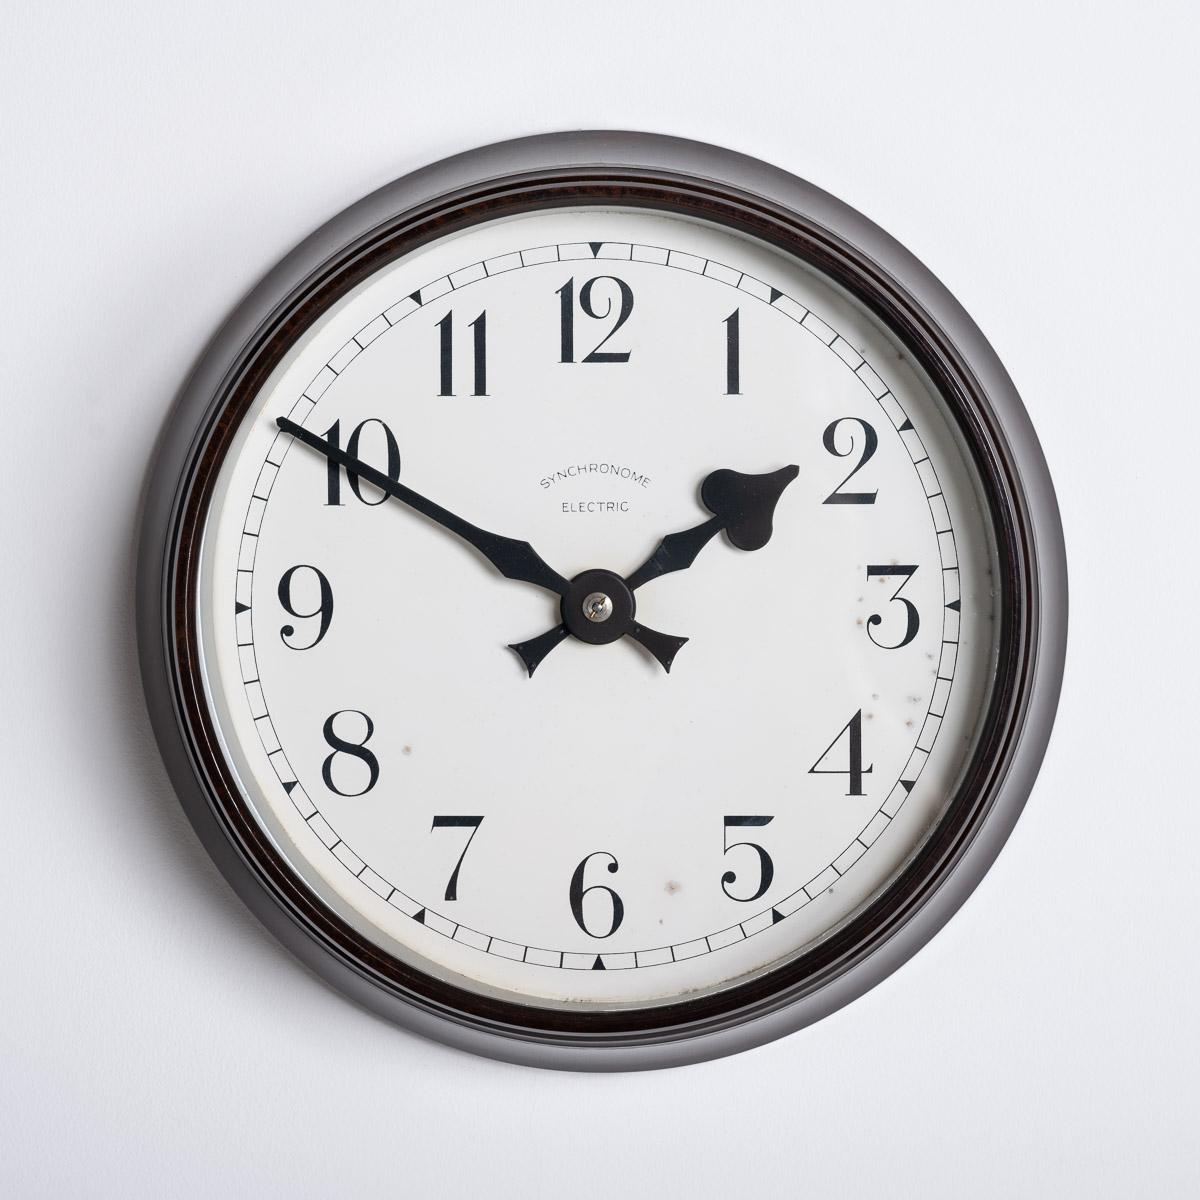 KLEINE WANDUHR MIT BAKELITGEHÄUSE VON SYNCHRONOME

Eine erstaunliche kleine Industrieuhr, hergestellt in England um 1940 von Synchronome.

Synchronome war zu Beginn und in der Mitte des 20. Jahrhunderts der führende Uhrenhersteller, der trotz der